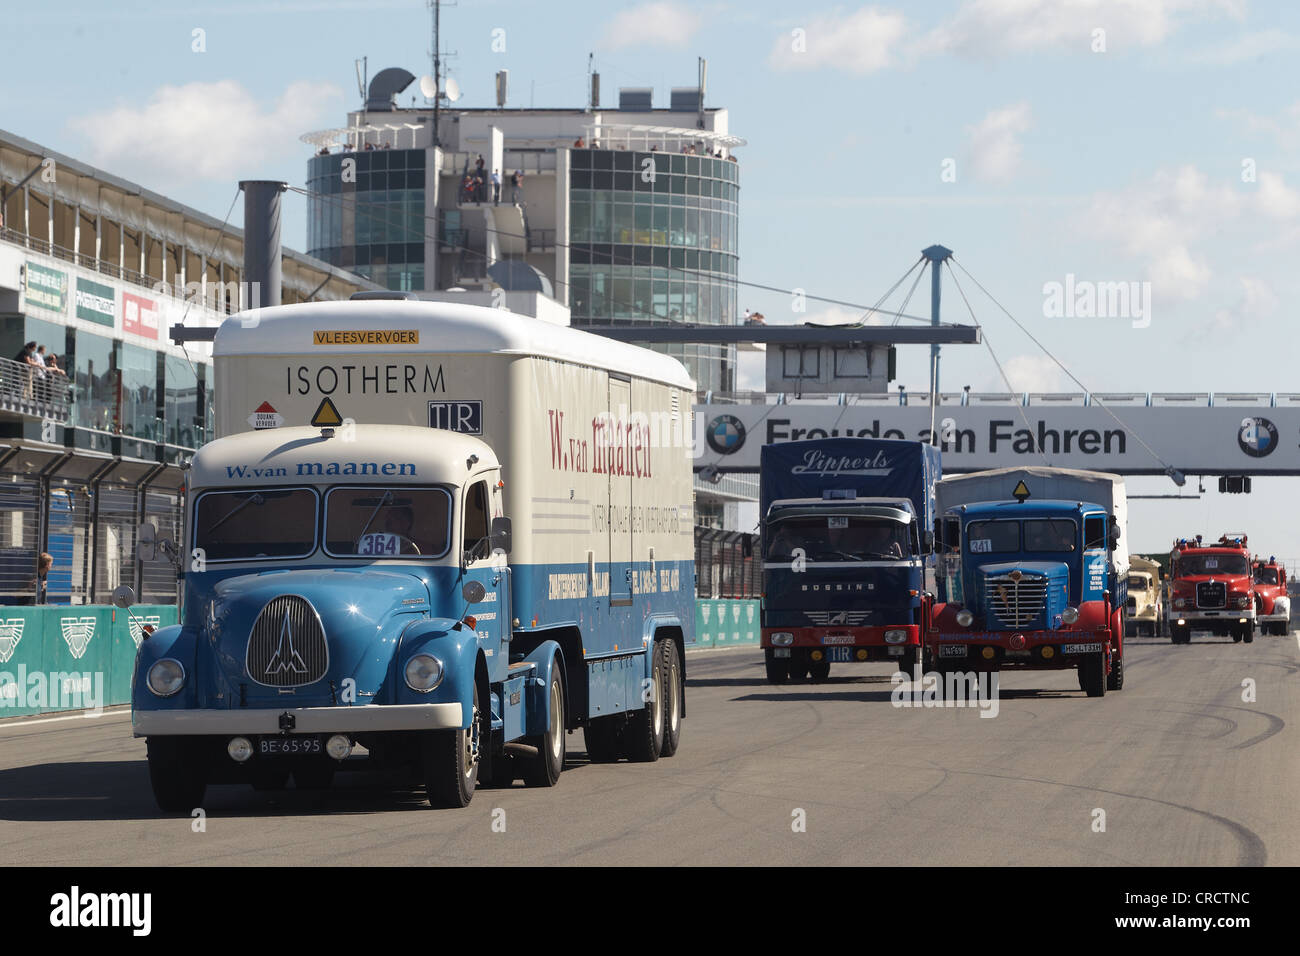 Défilé de camions vintage à l'Truck-Grand-prix, Nuerburgring race track, Rhénanie-Palatinat, Allemagne, Europe Banque D'Images